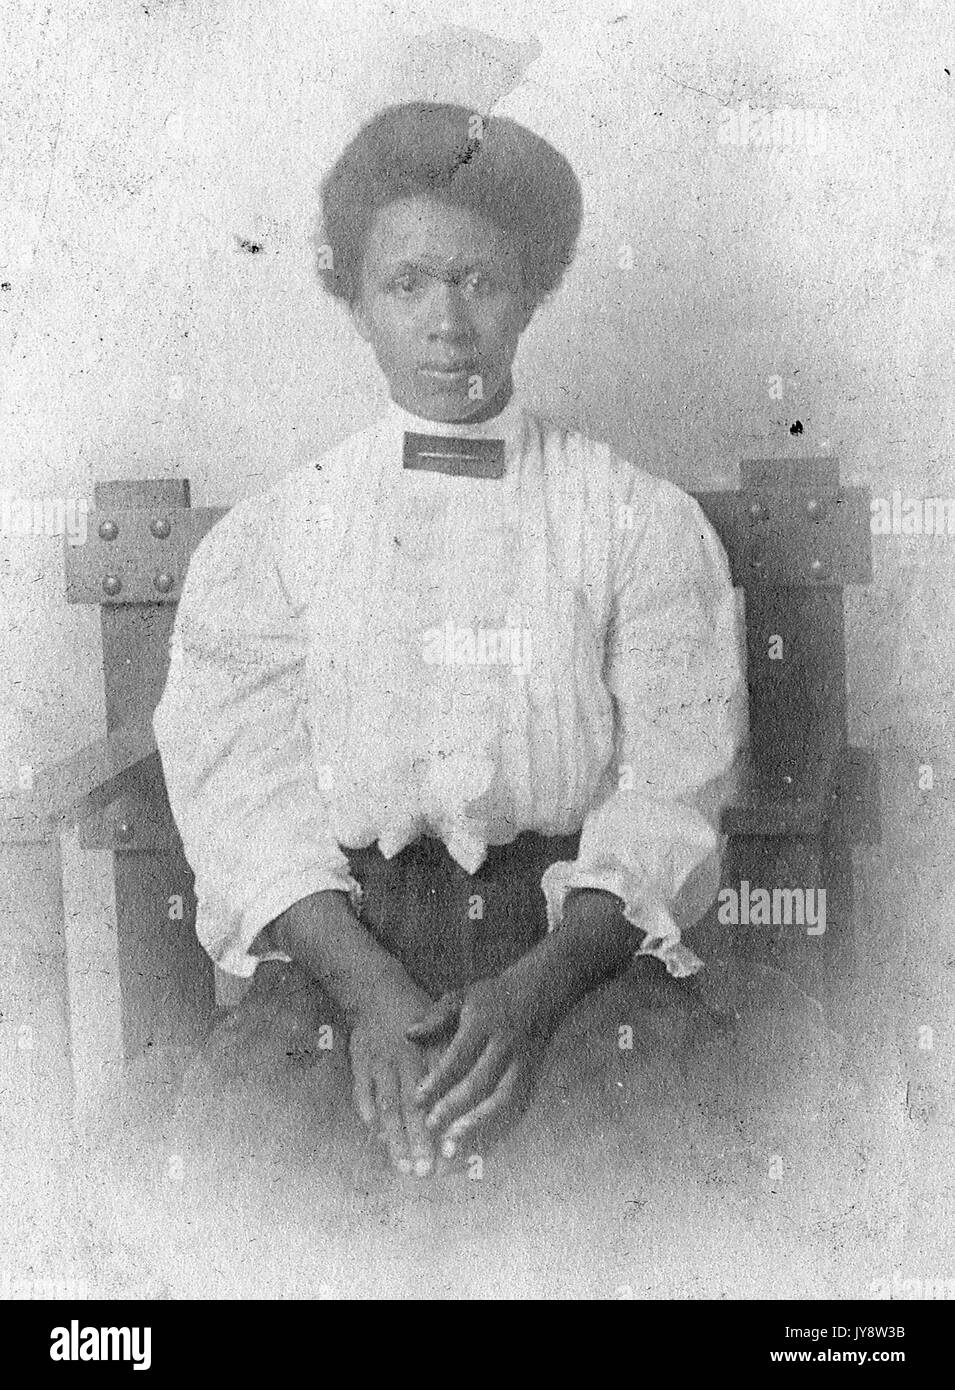 Taille bis Portrait von Sitzen afrikanische amerikanische Frau, eine weiße Bluse und karierten Kleid, mit einem ernsten Gesichtsausdruck, die Hände auf dem Schoß, 1920 ruhte. Stockfoto